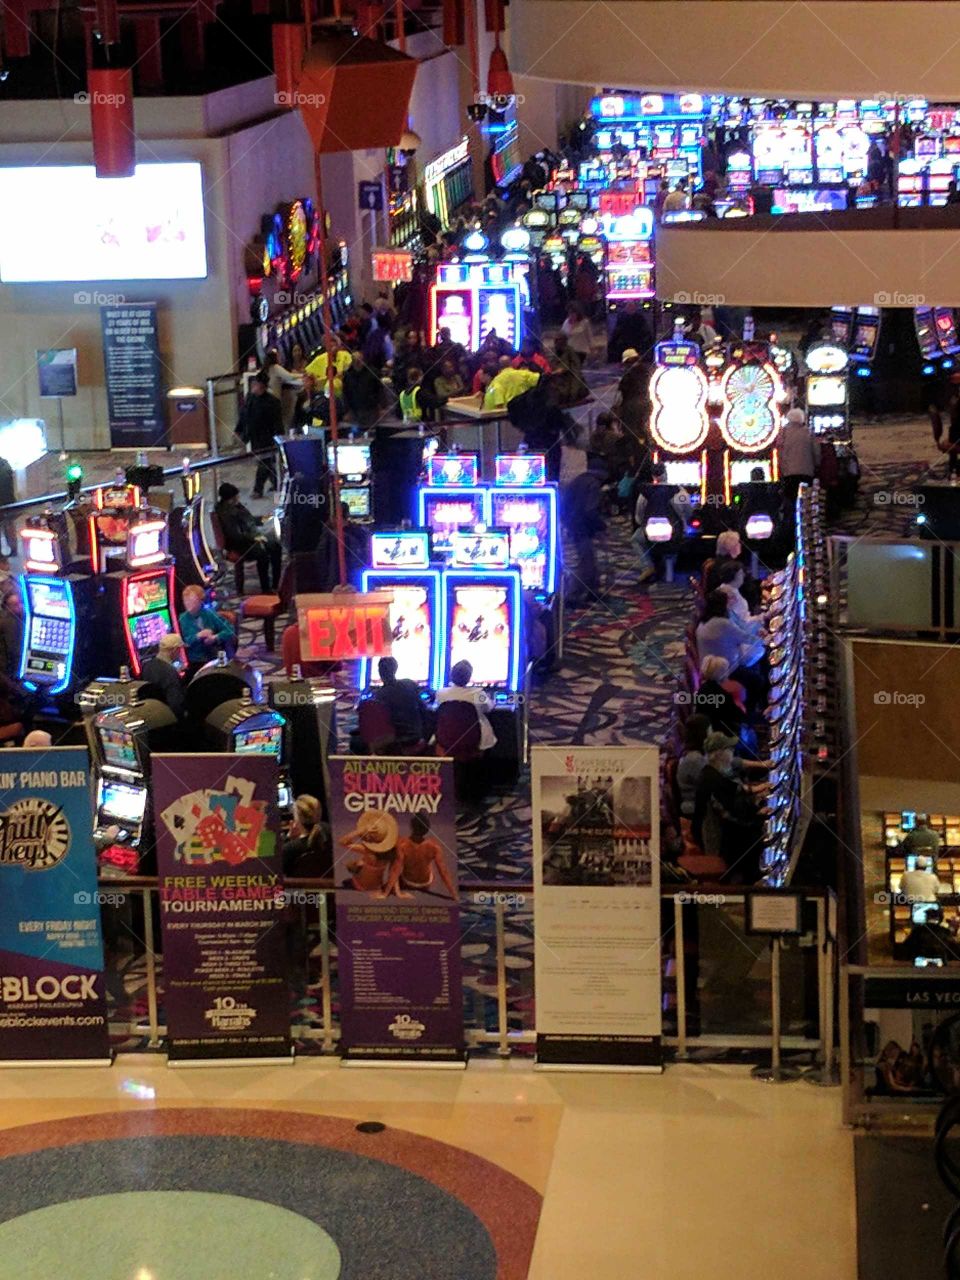 Harrah's casino Pennsylvania